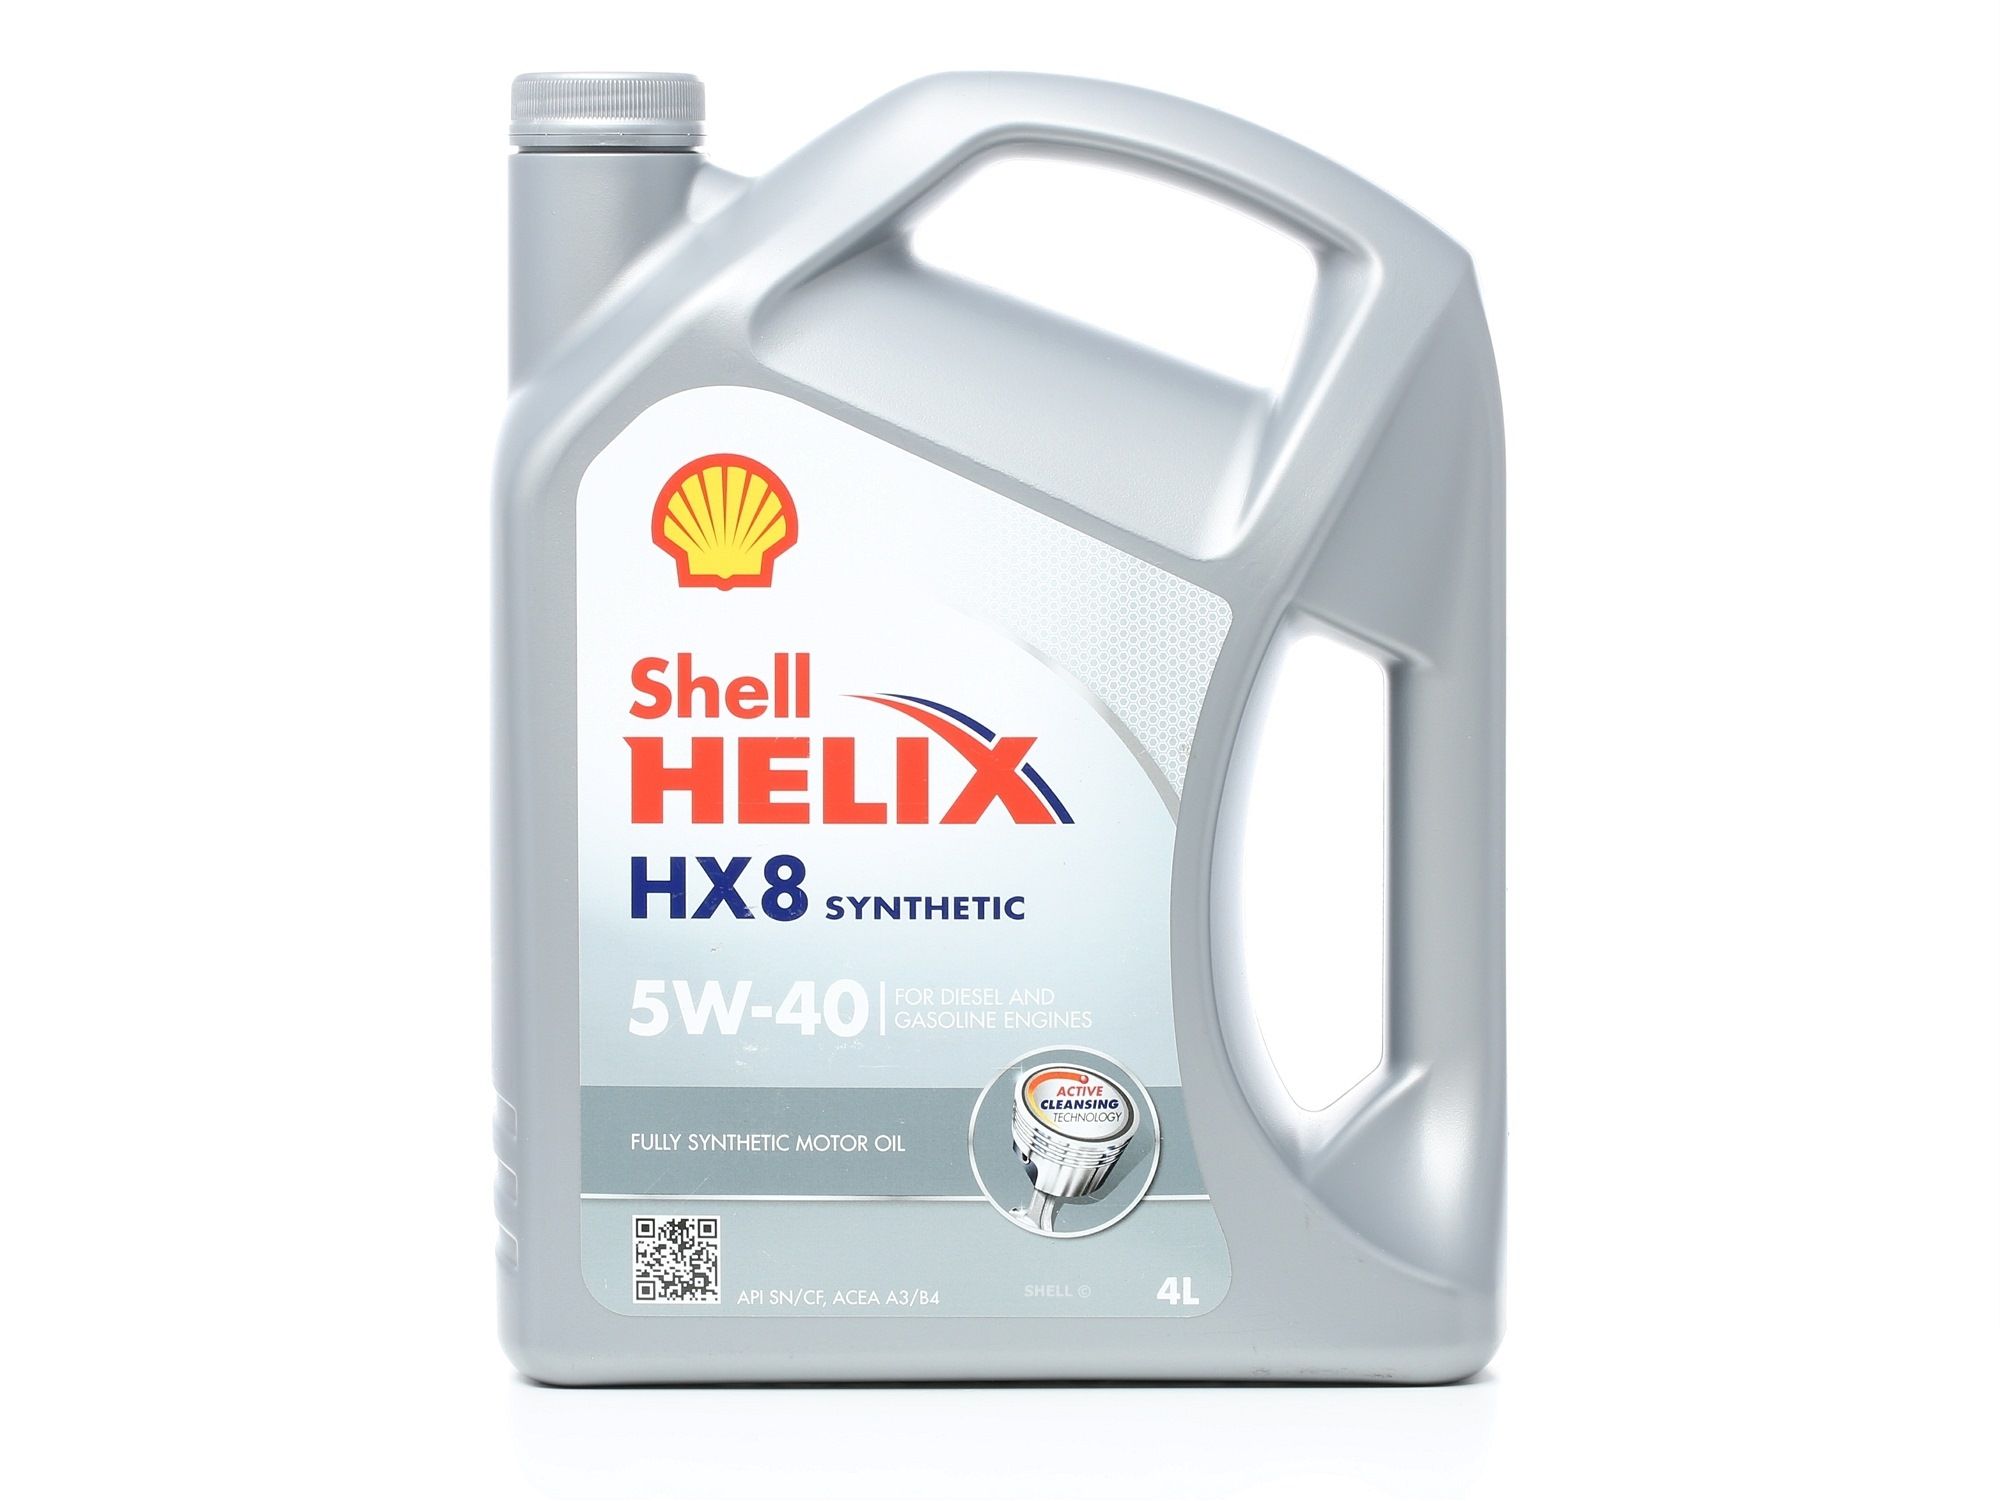 Kaufen Sie KFZ Motoröl SHELL 550046291 Helix, HX8 5W-40, 4l, Synthetiköl